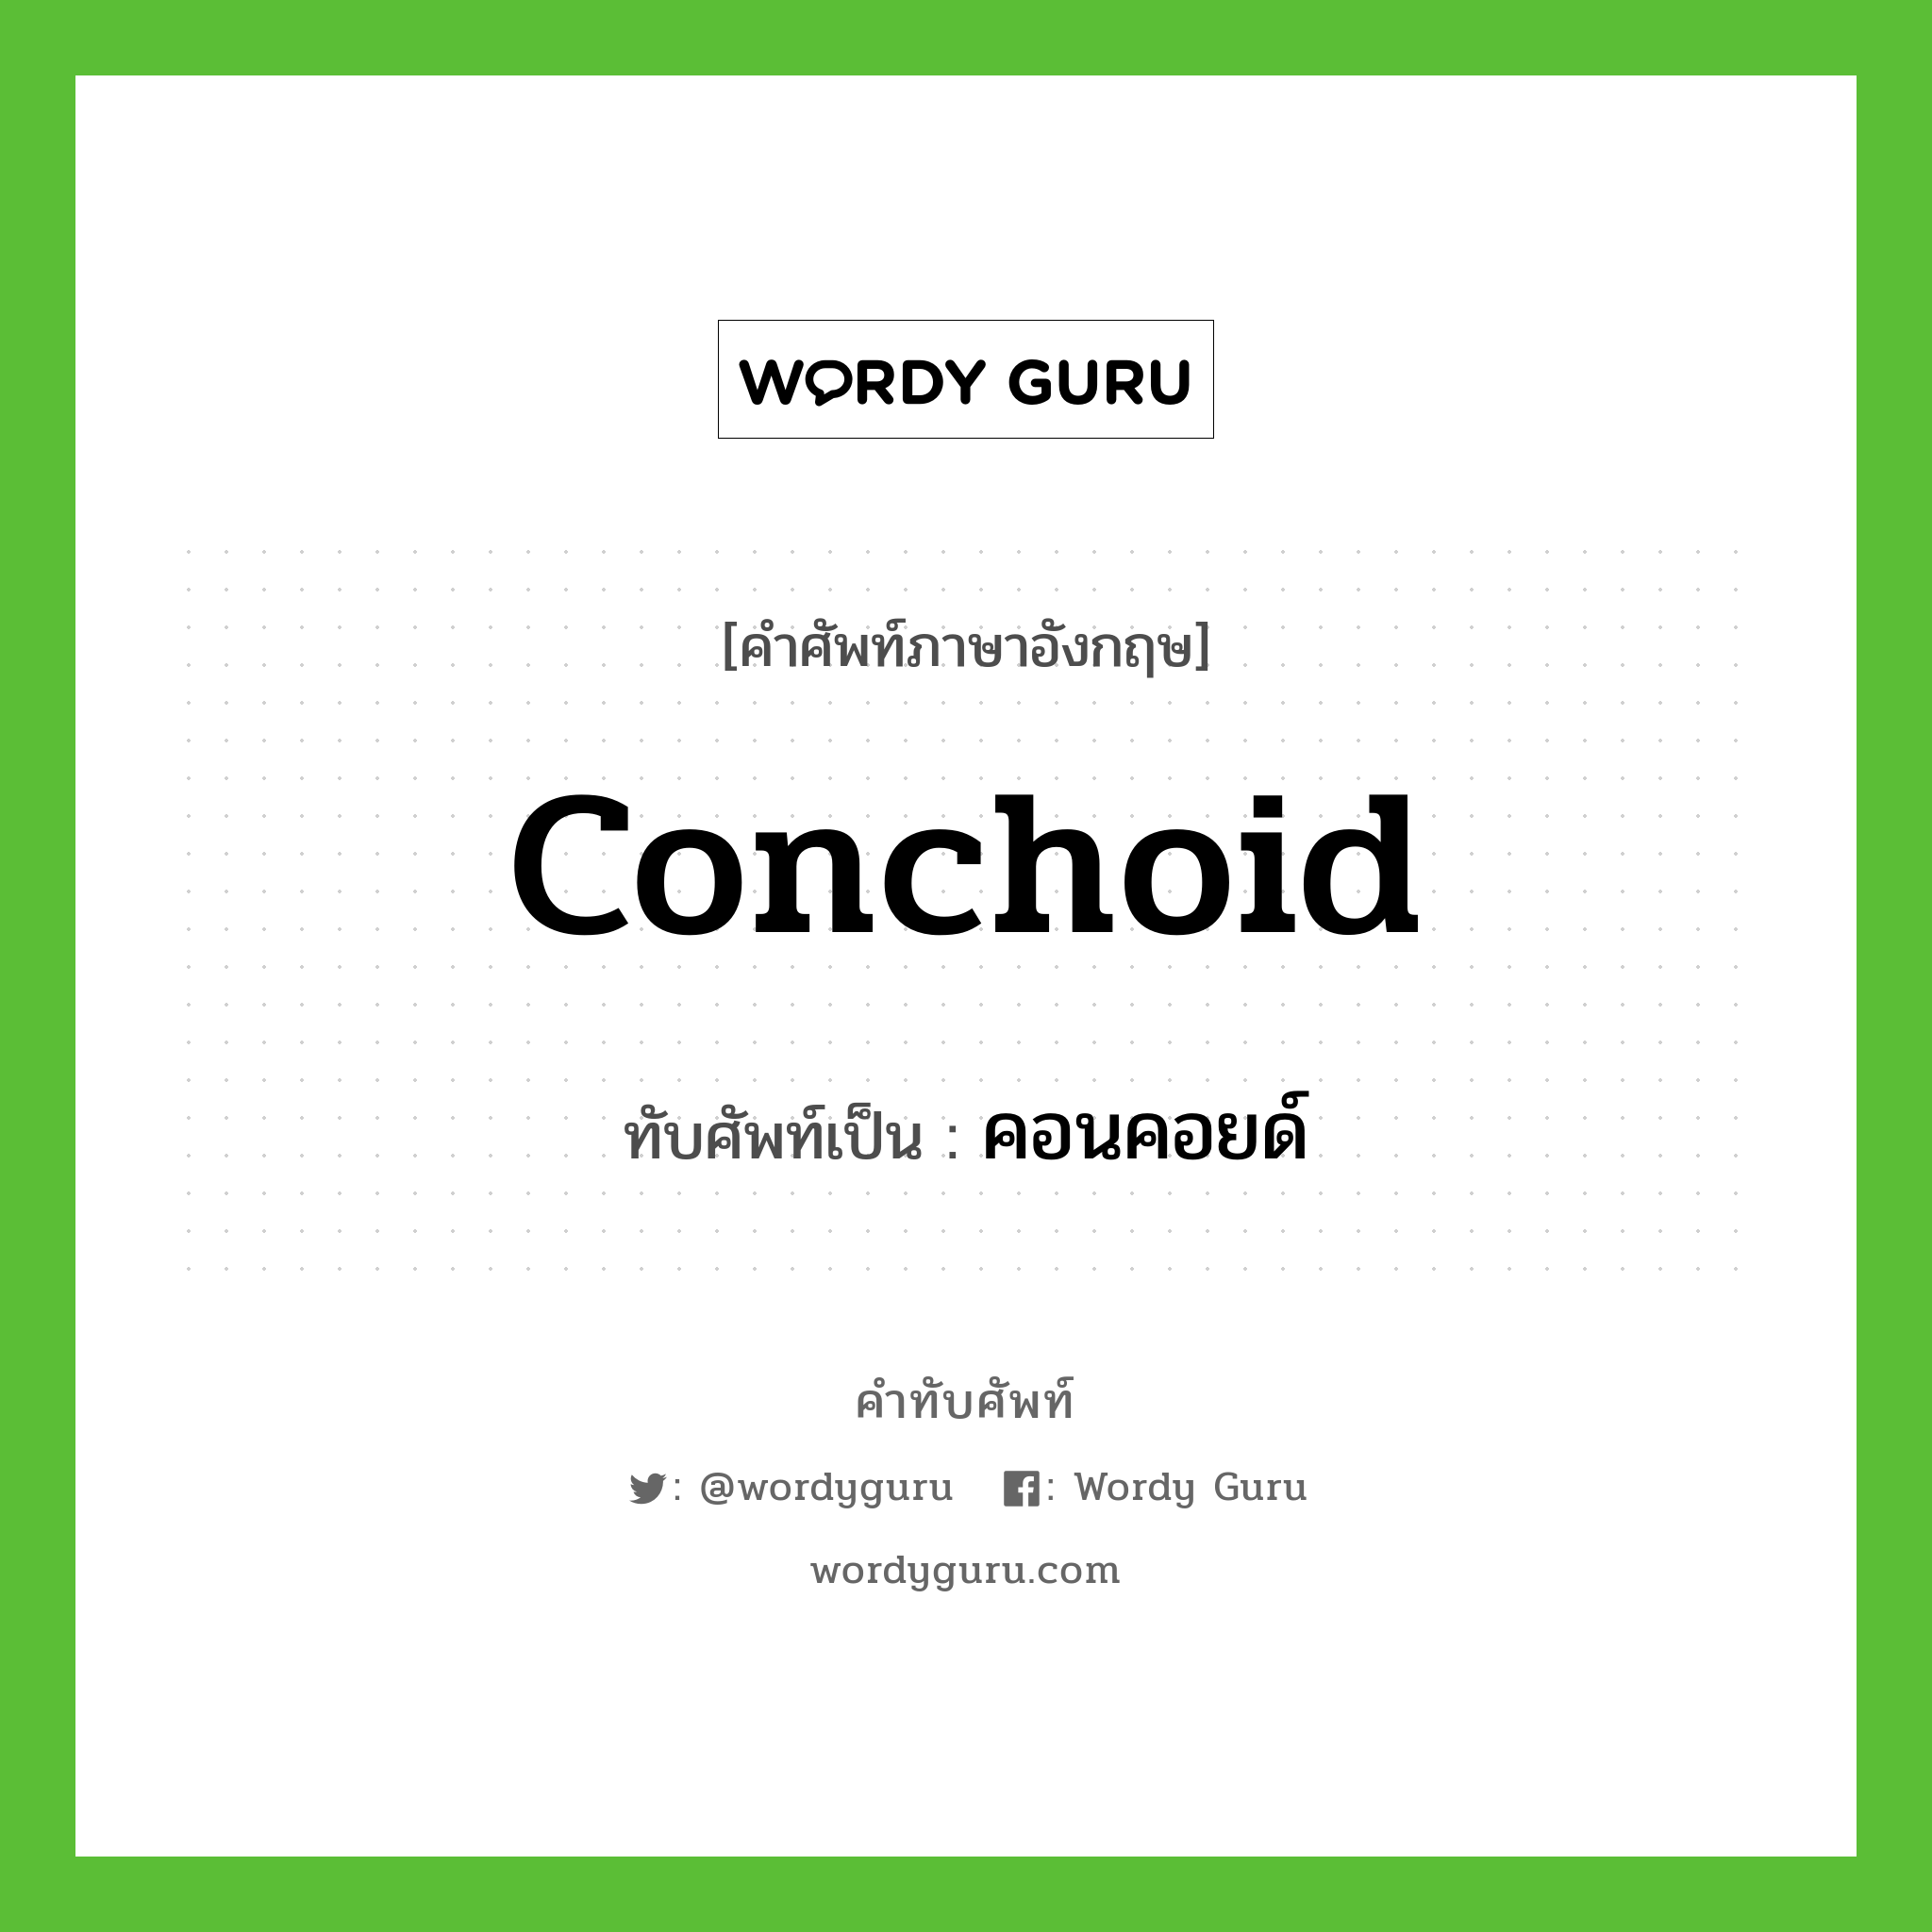 คอนคอยด์ เขียนอย่างไร?, คำศัพท์ภาษาอังกฤษ คอนคอยด์ ทับศัพท์เป็น conchoid